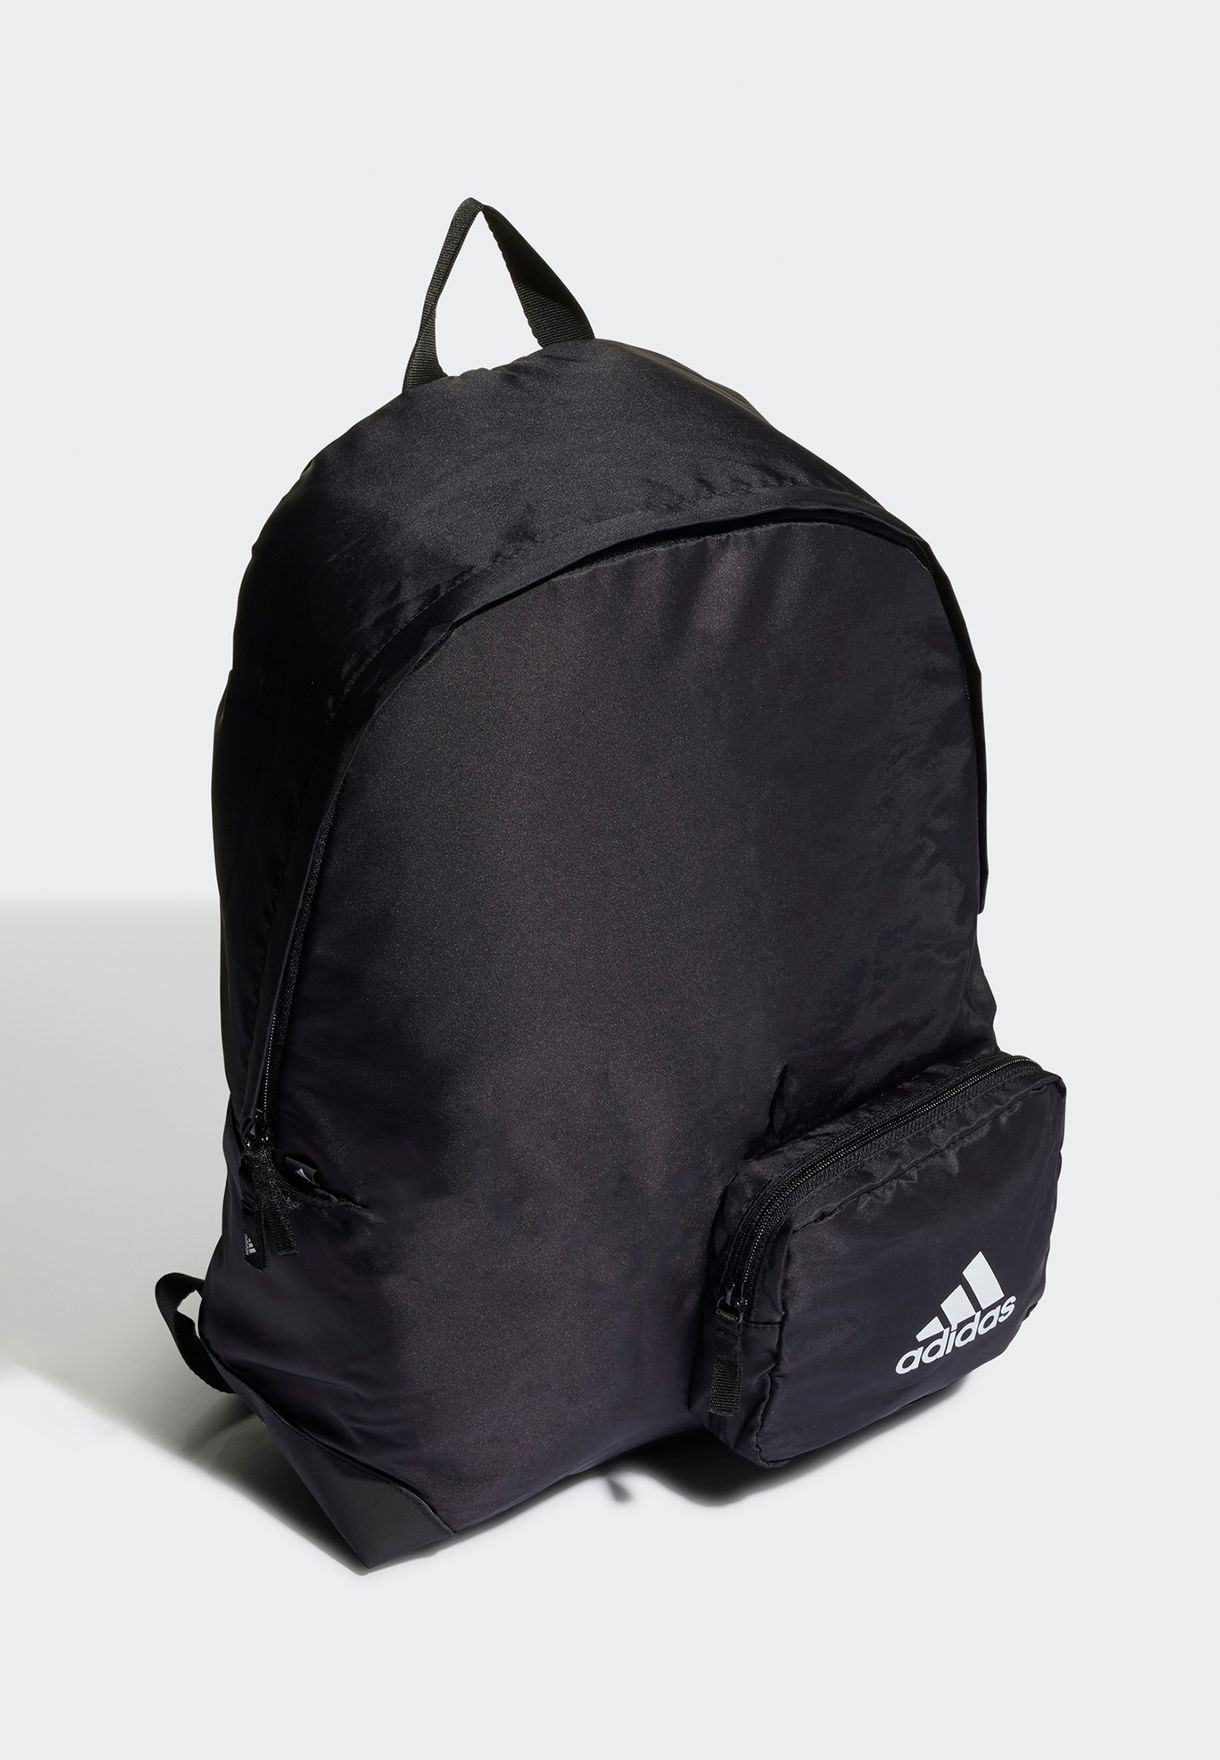 Fi Backpack